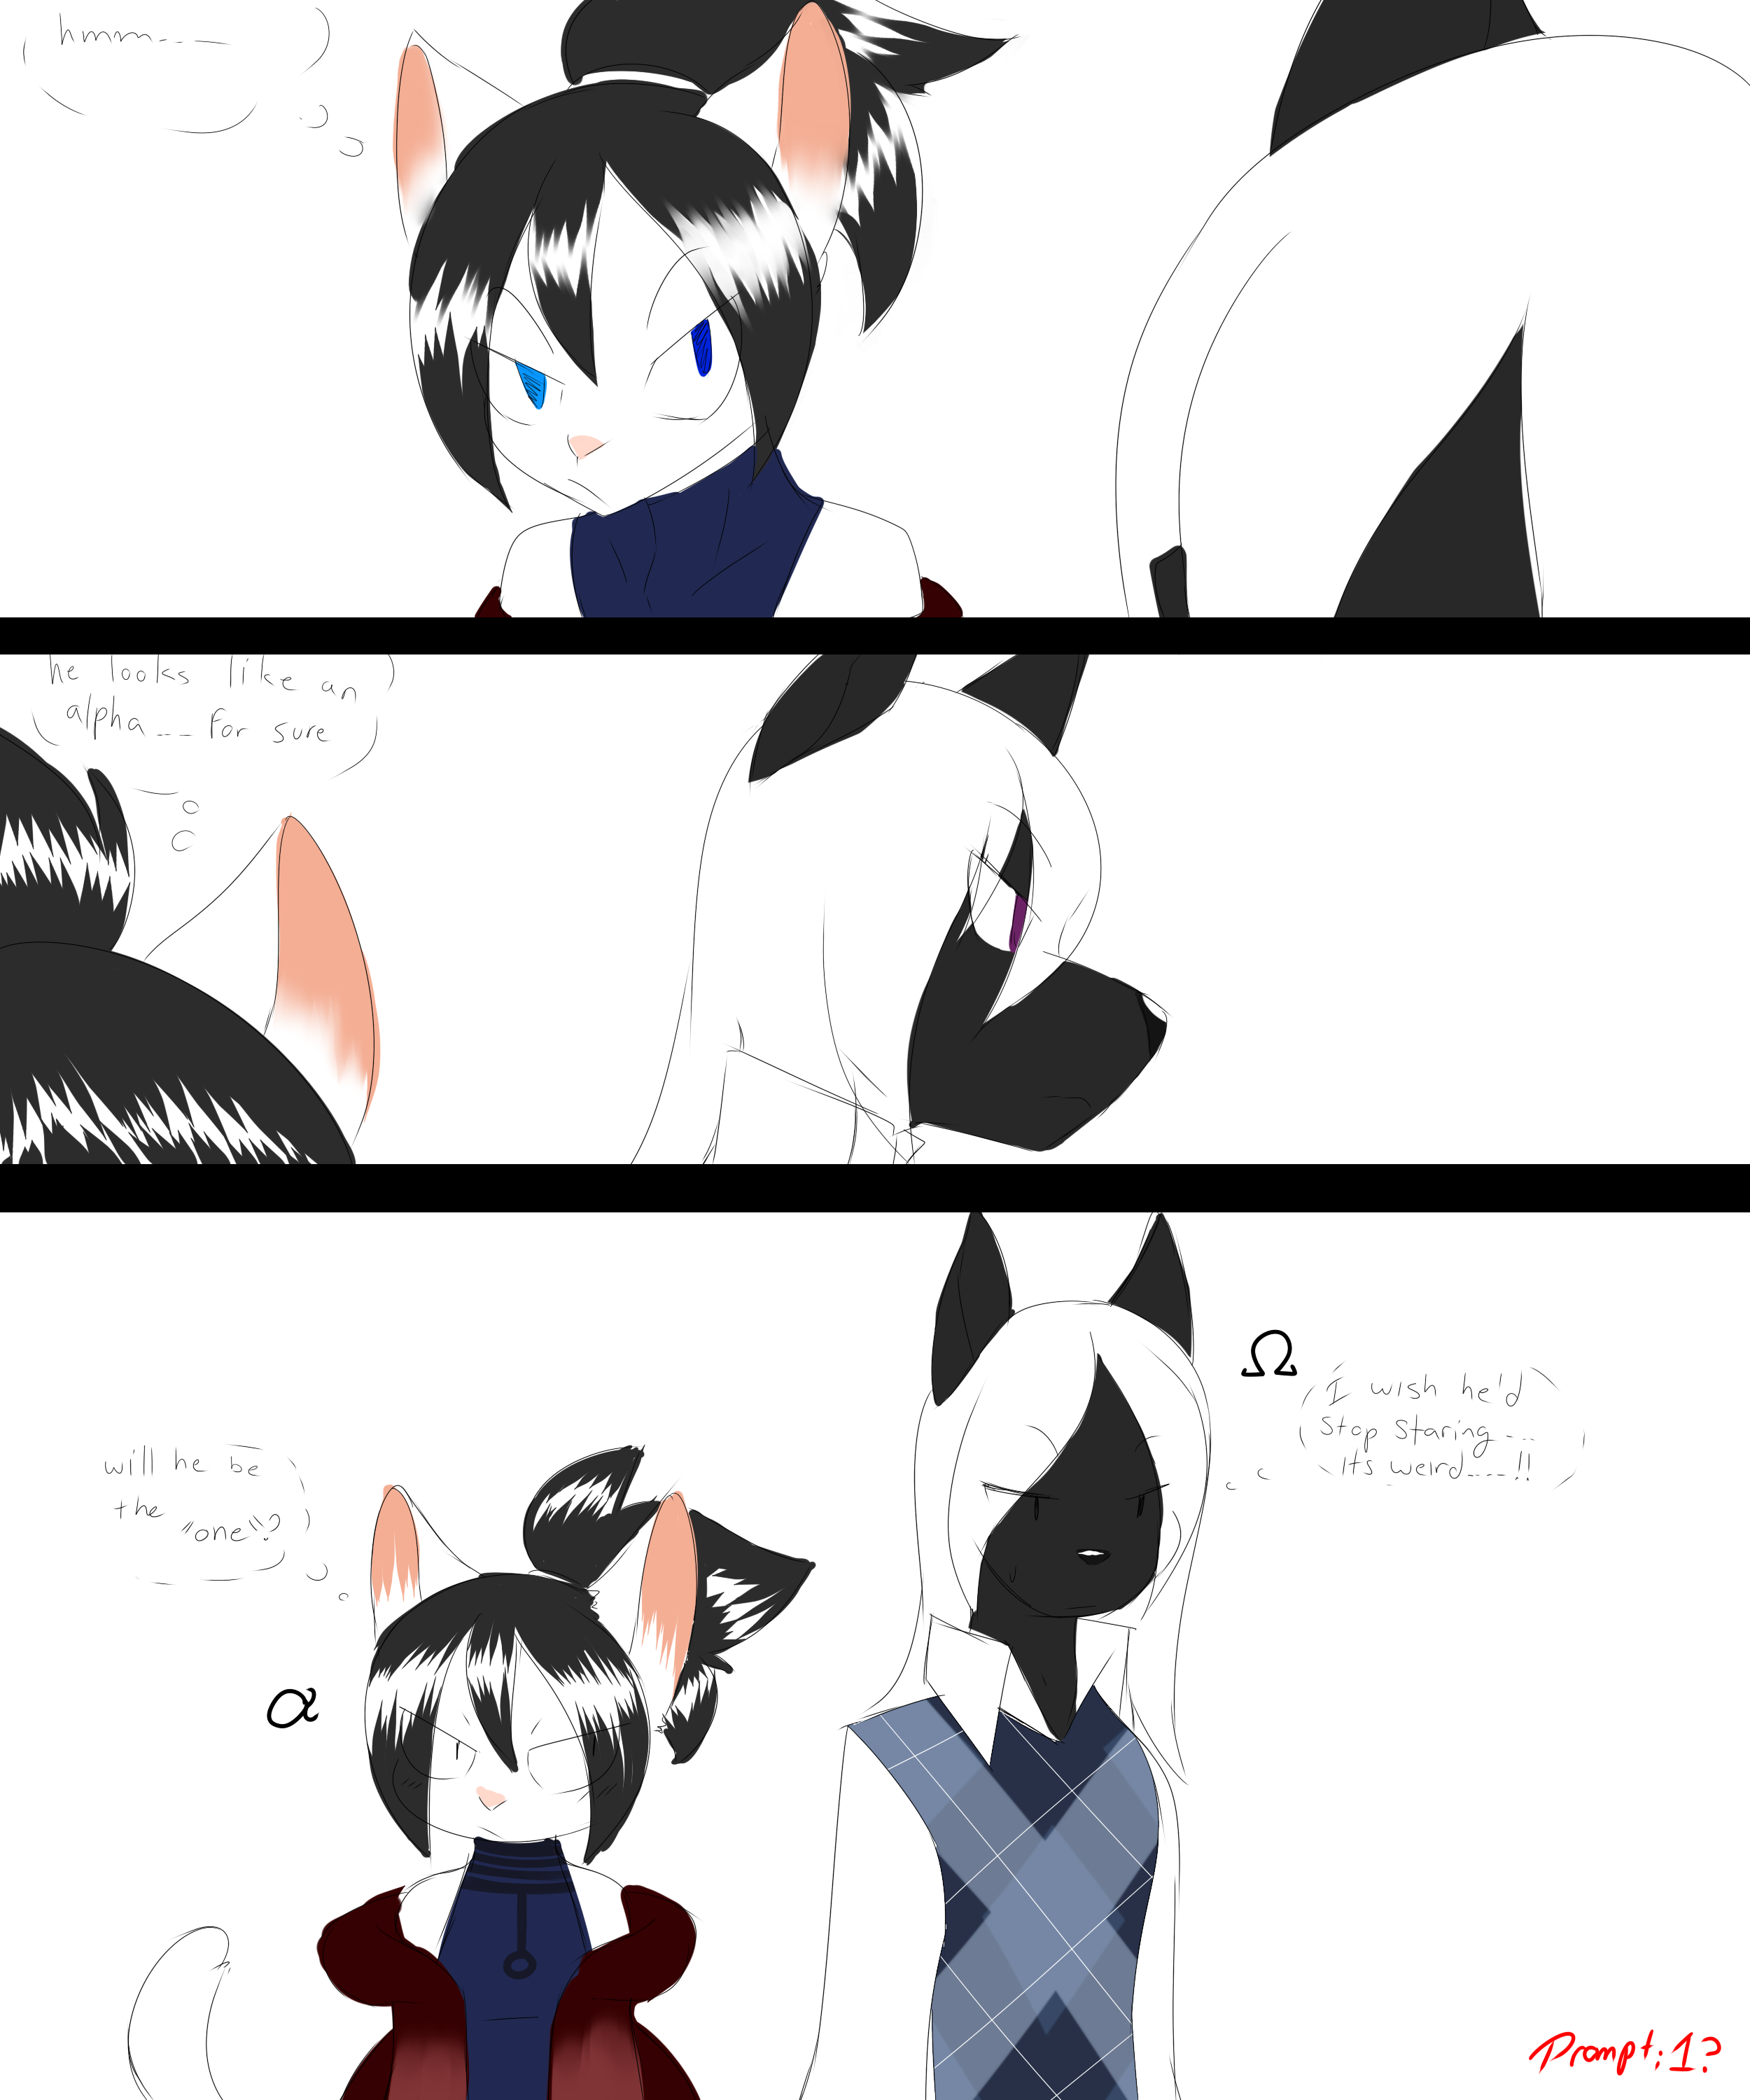 How kuro and Shiro met their master